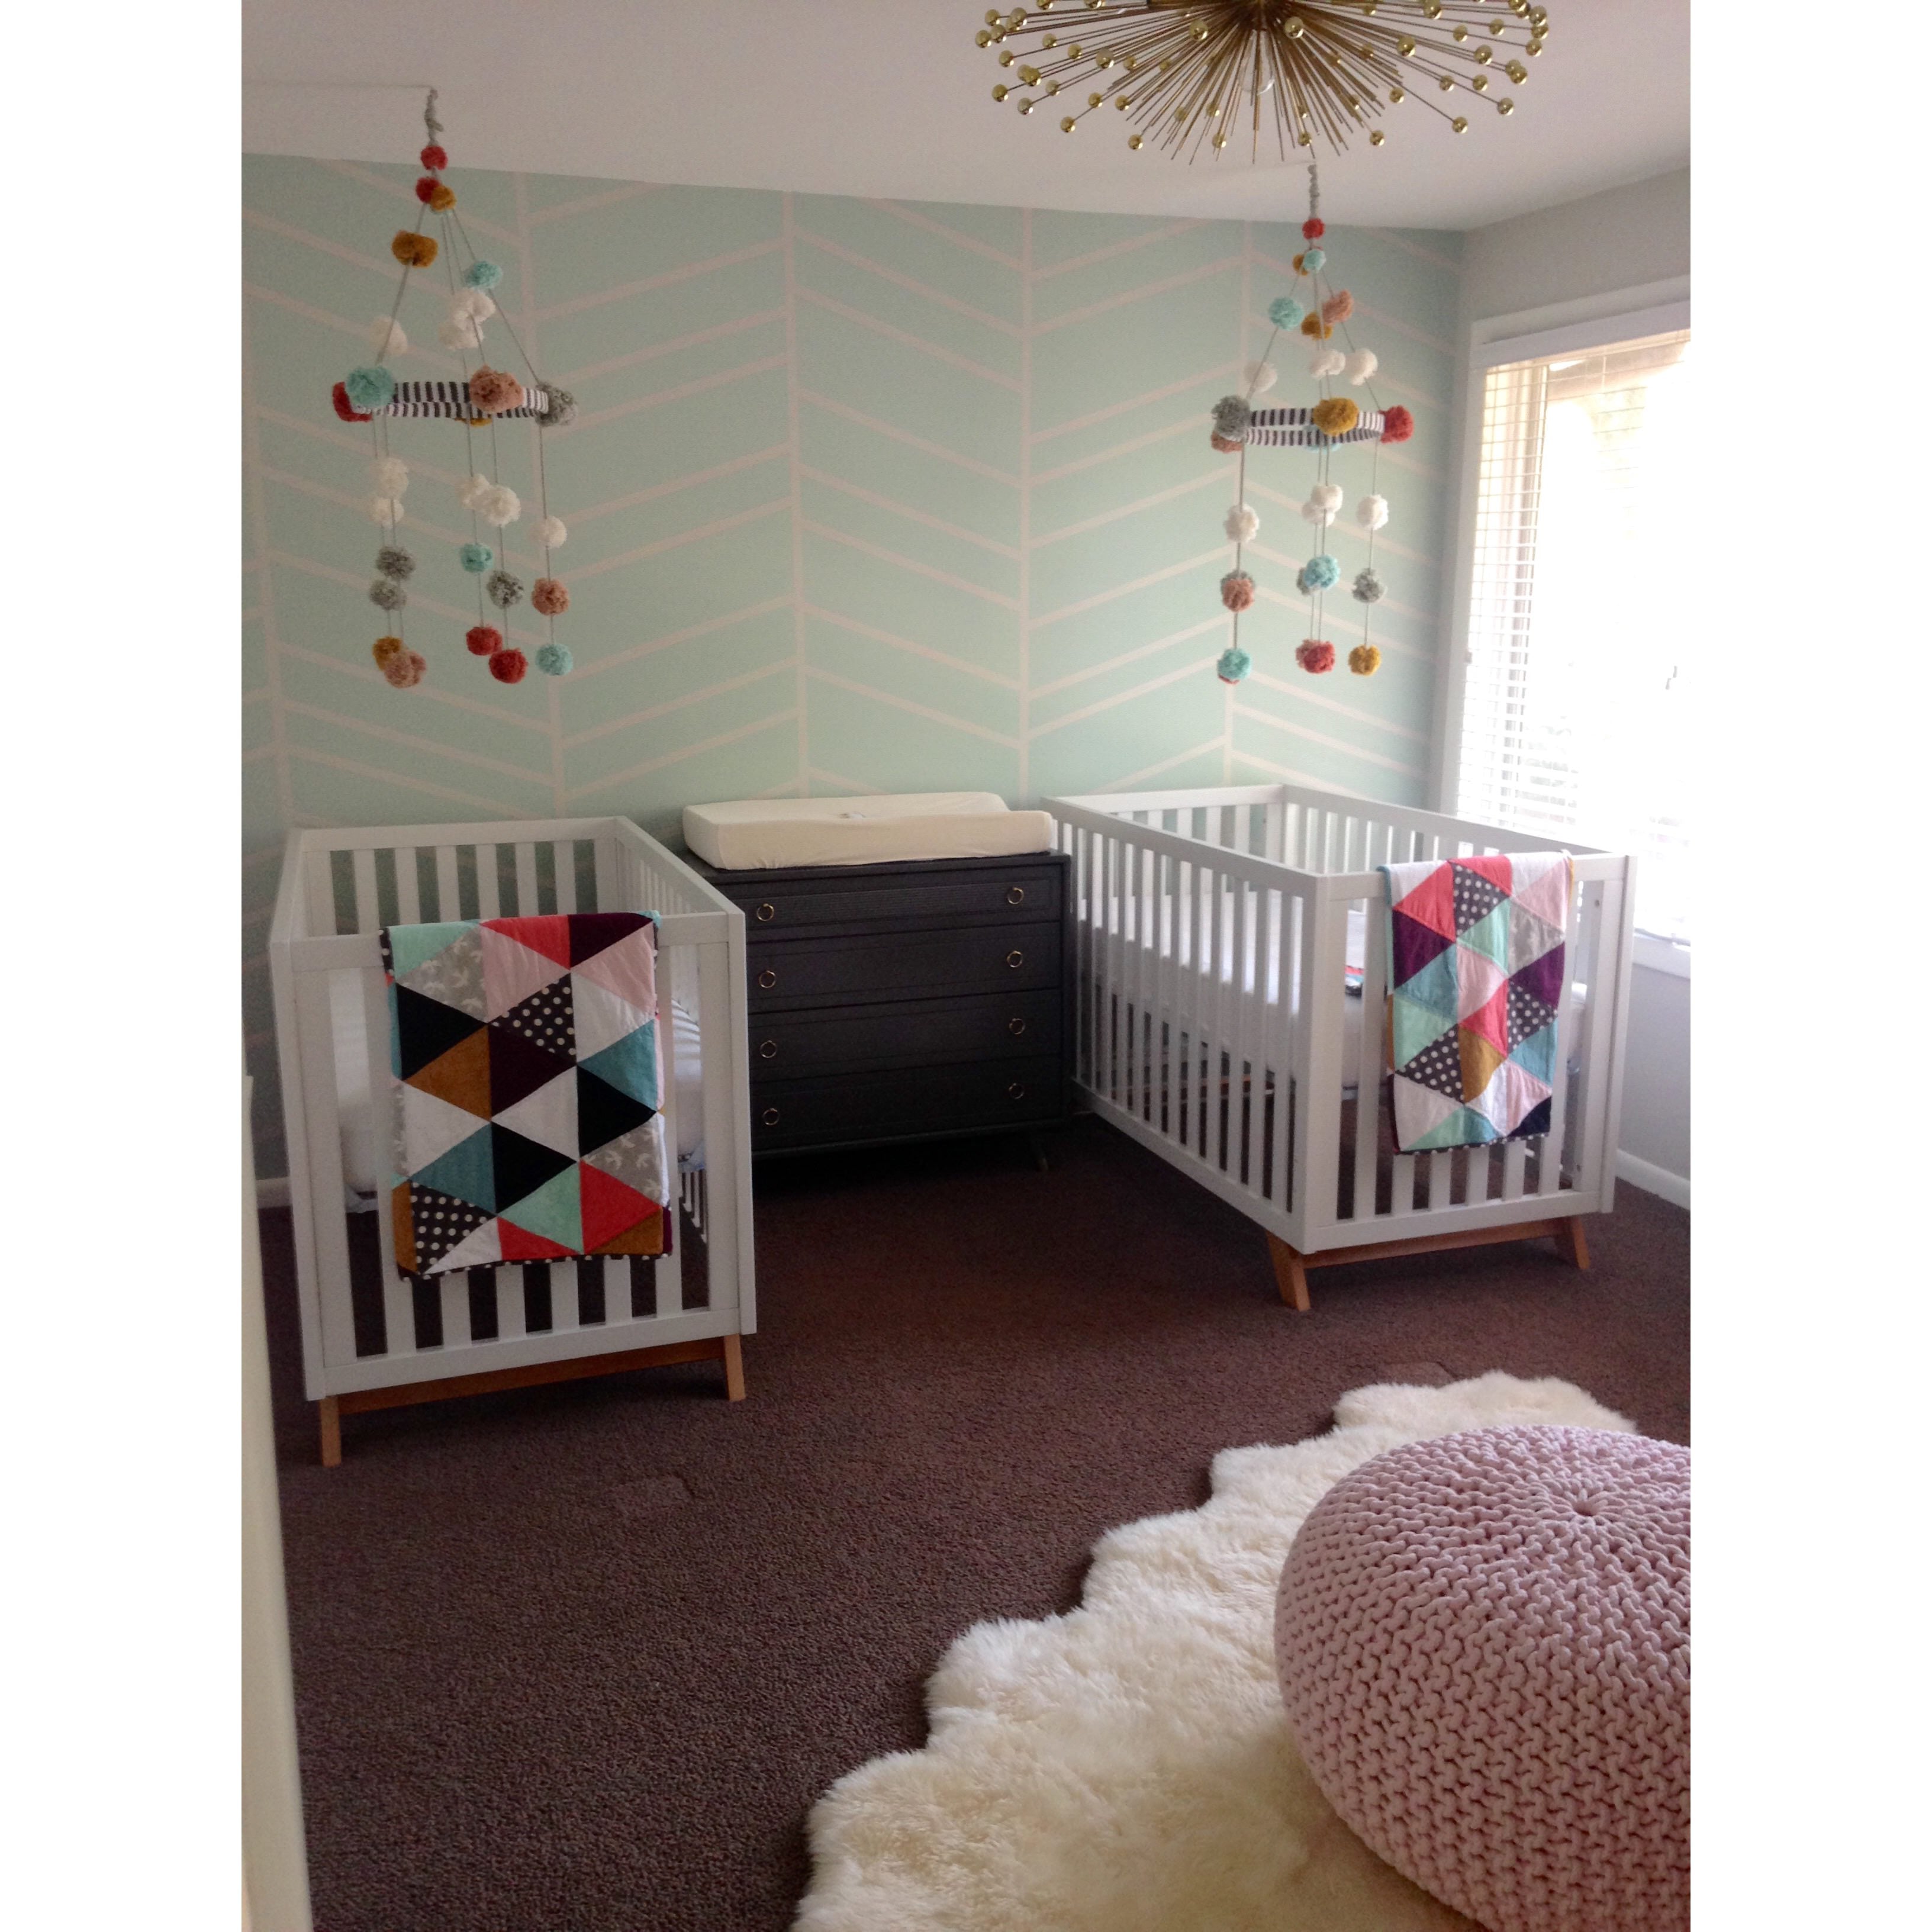 Michigan, twins, baby room, baby room style, baby room decor, baby room theme. organized baby room, modern baby room, Lauren Combs,  Lauren McGraw